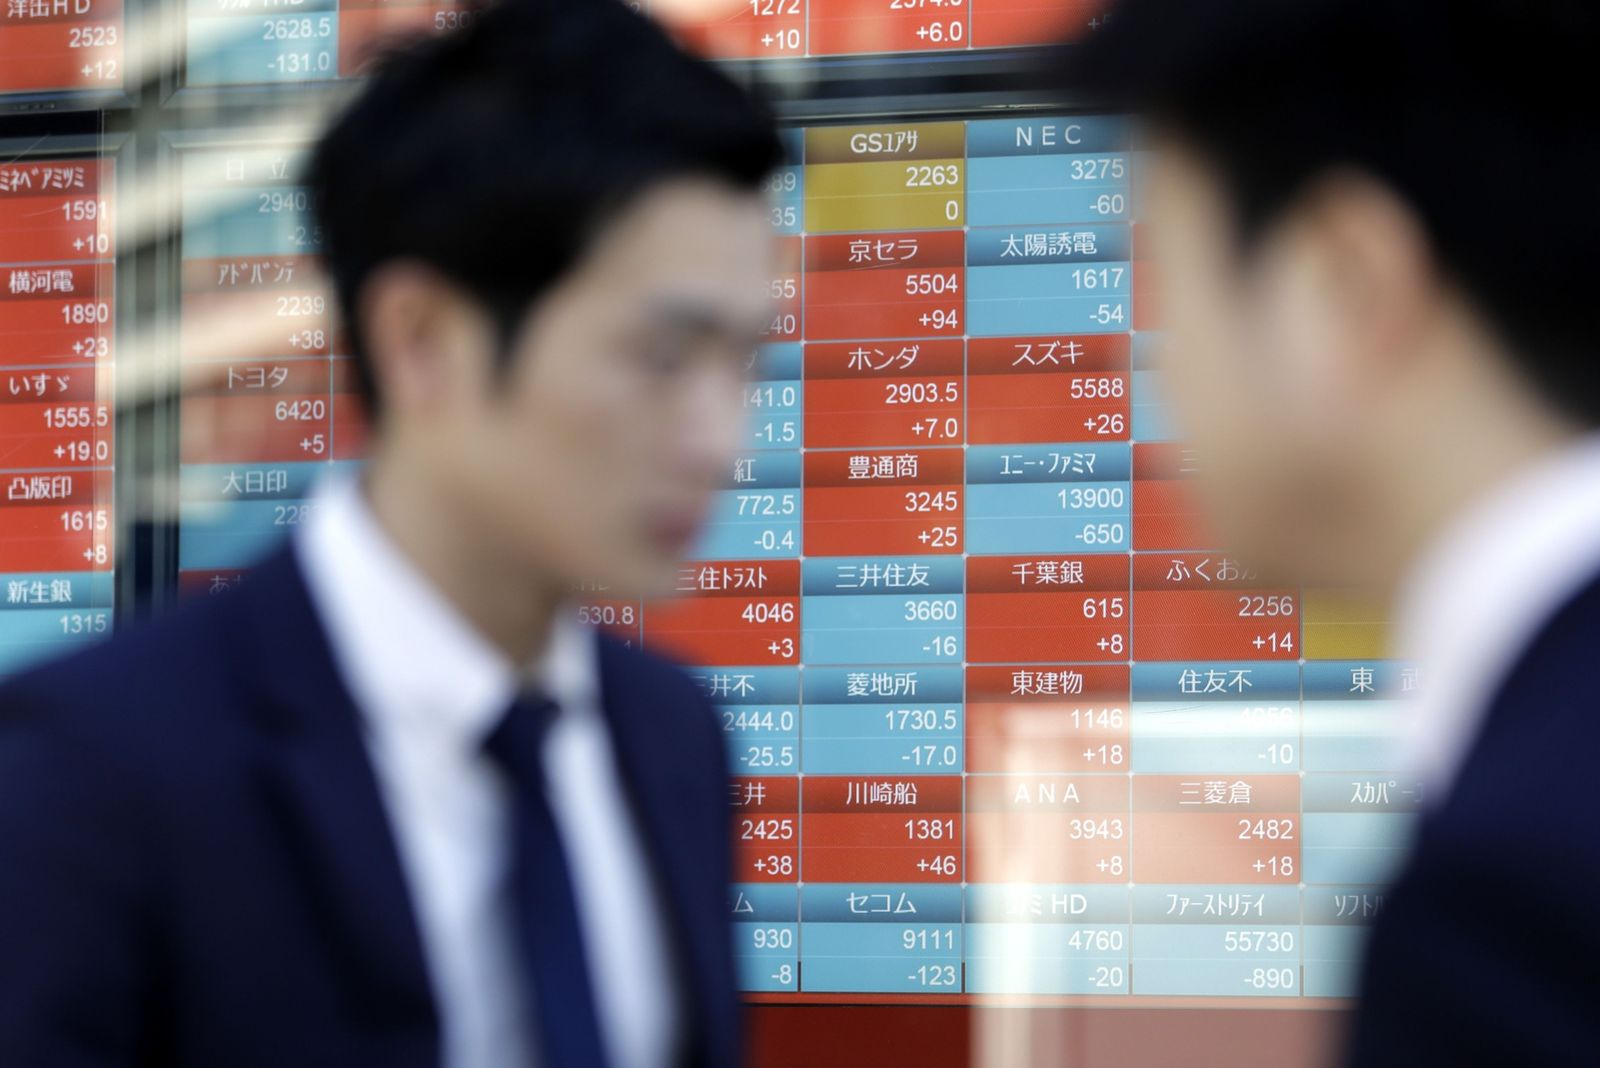 الأسهم الآسيوية ترتفع بعد انتعاش السوق الصينية وهبوط الدولار